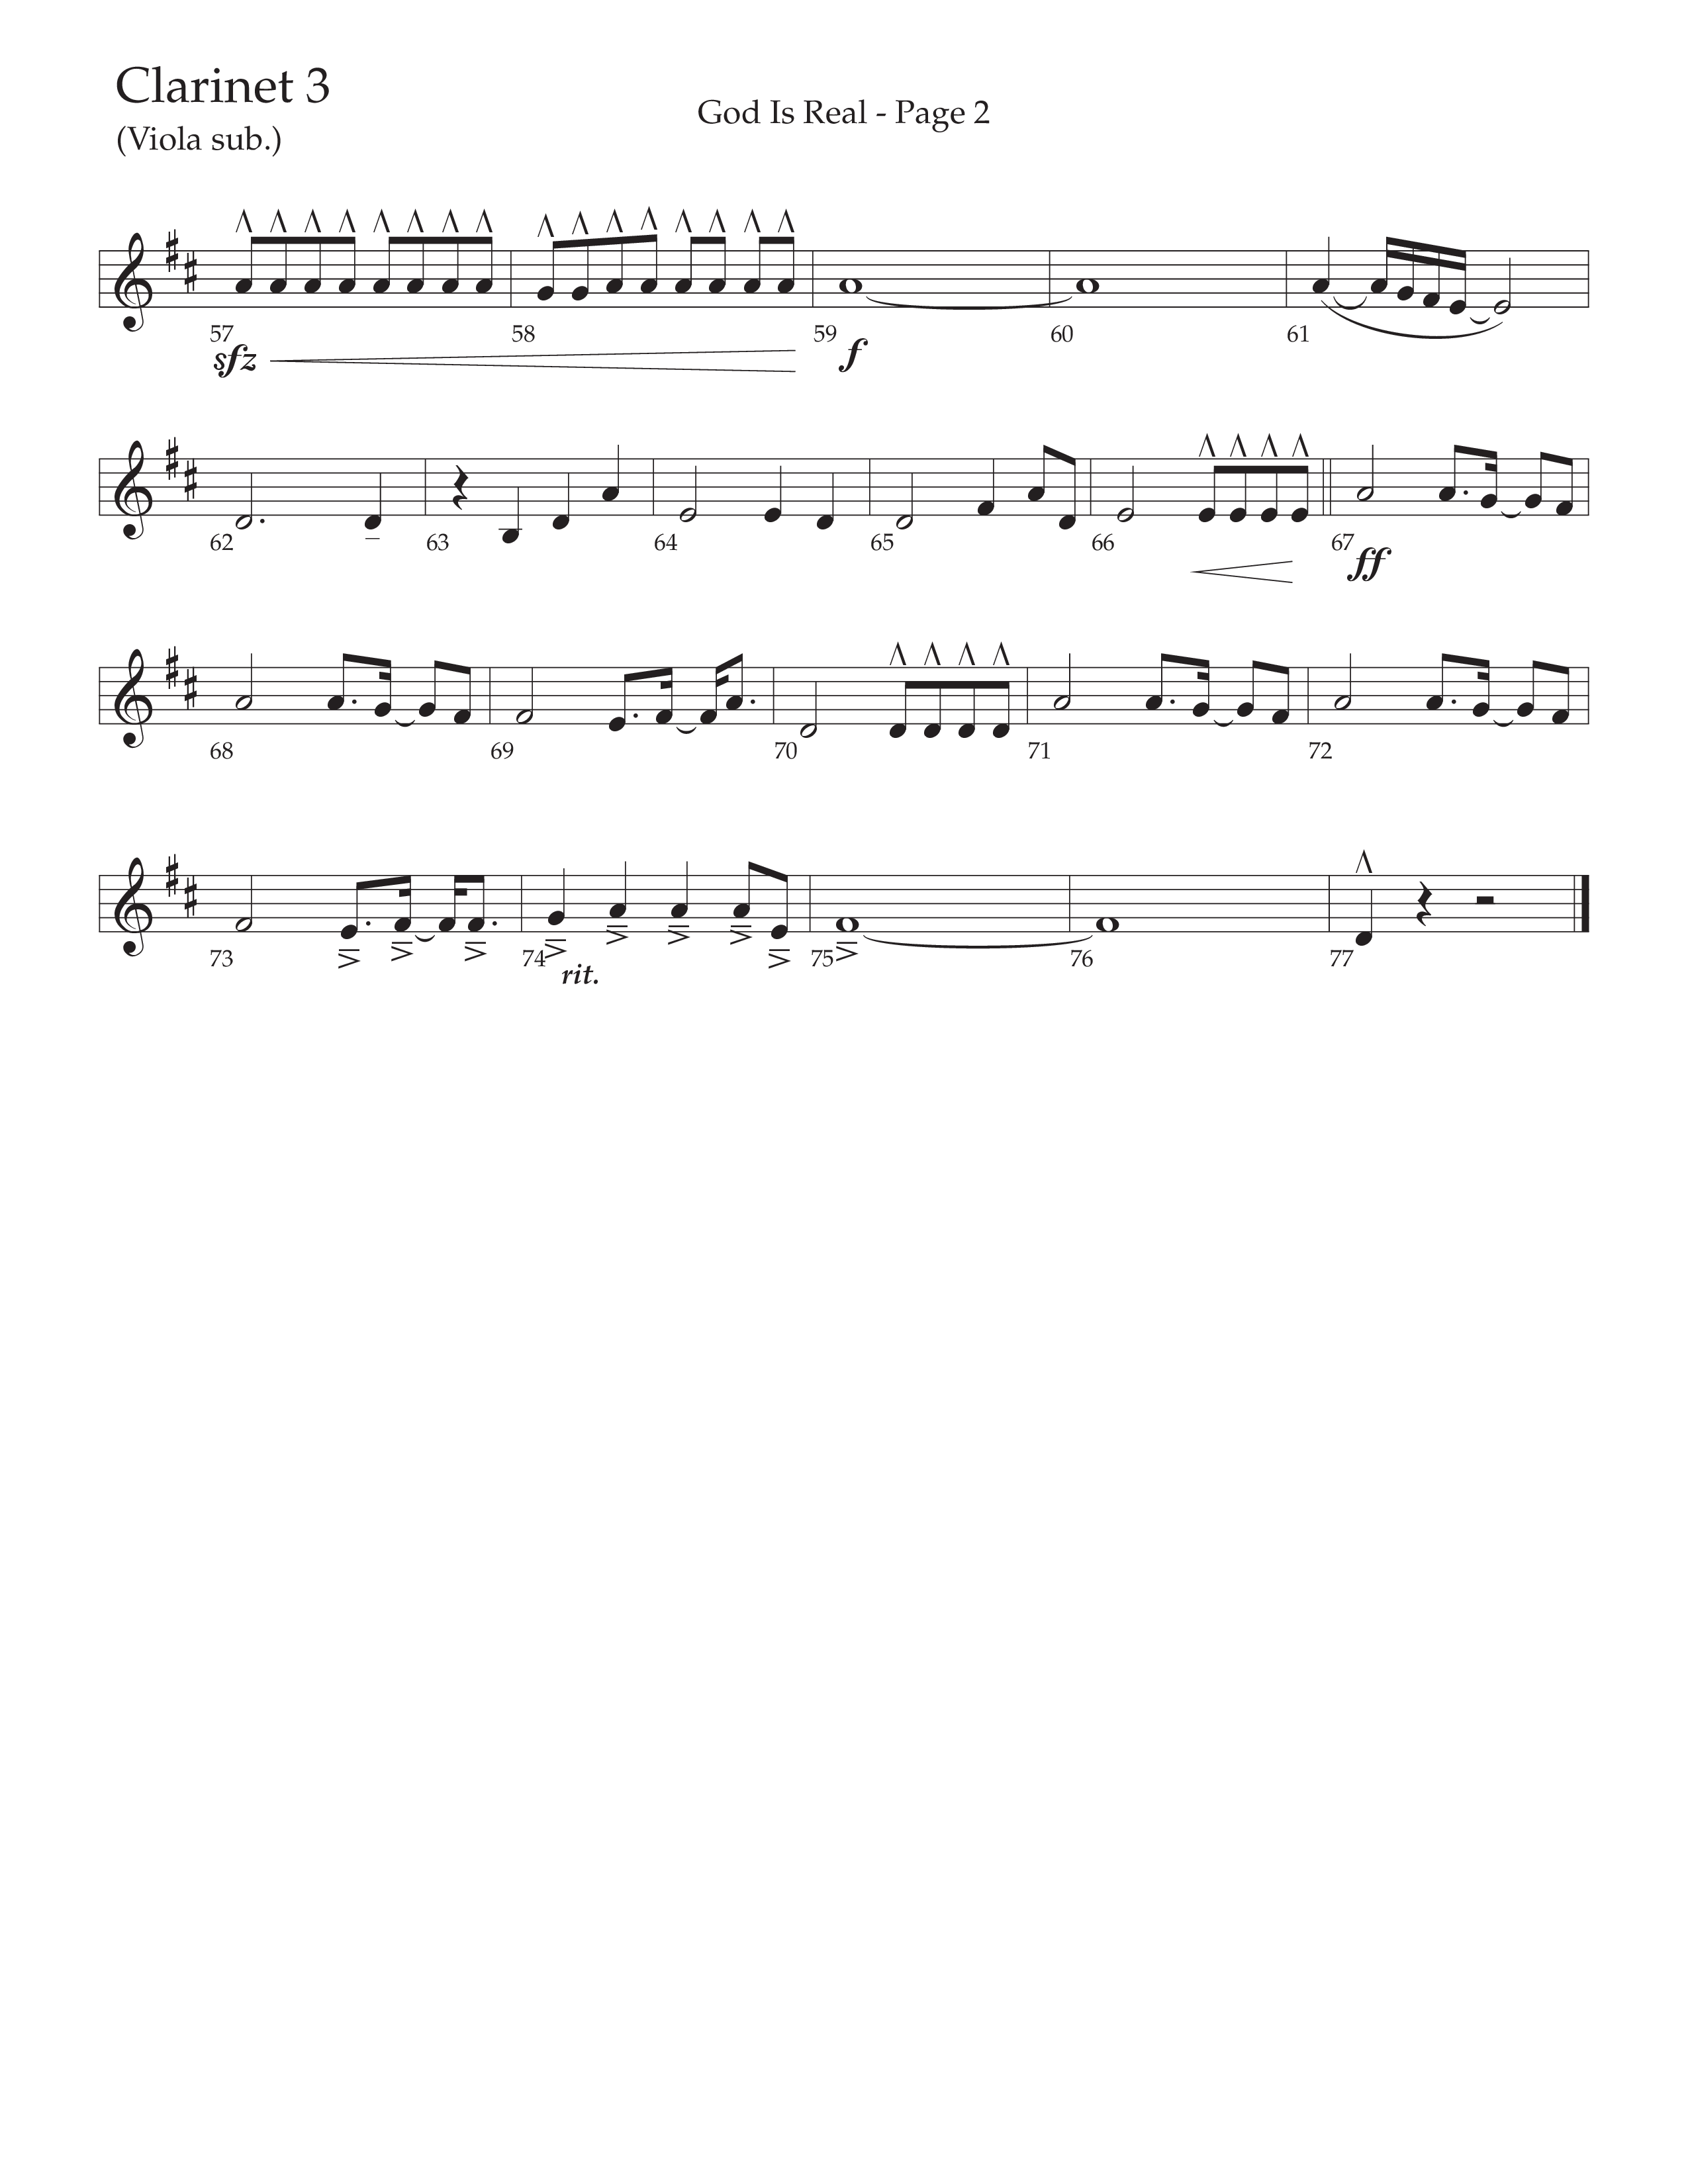 God Is Real (Choral Anthem SATB) Clarinet 3 (Daywind Worship / Arr. Cliff Duren)